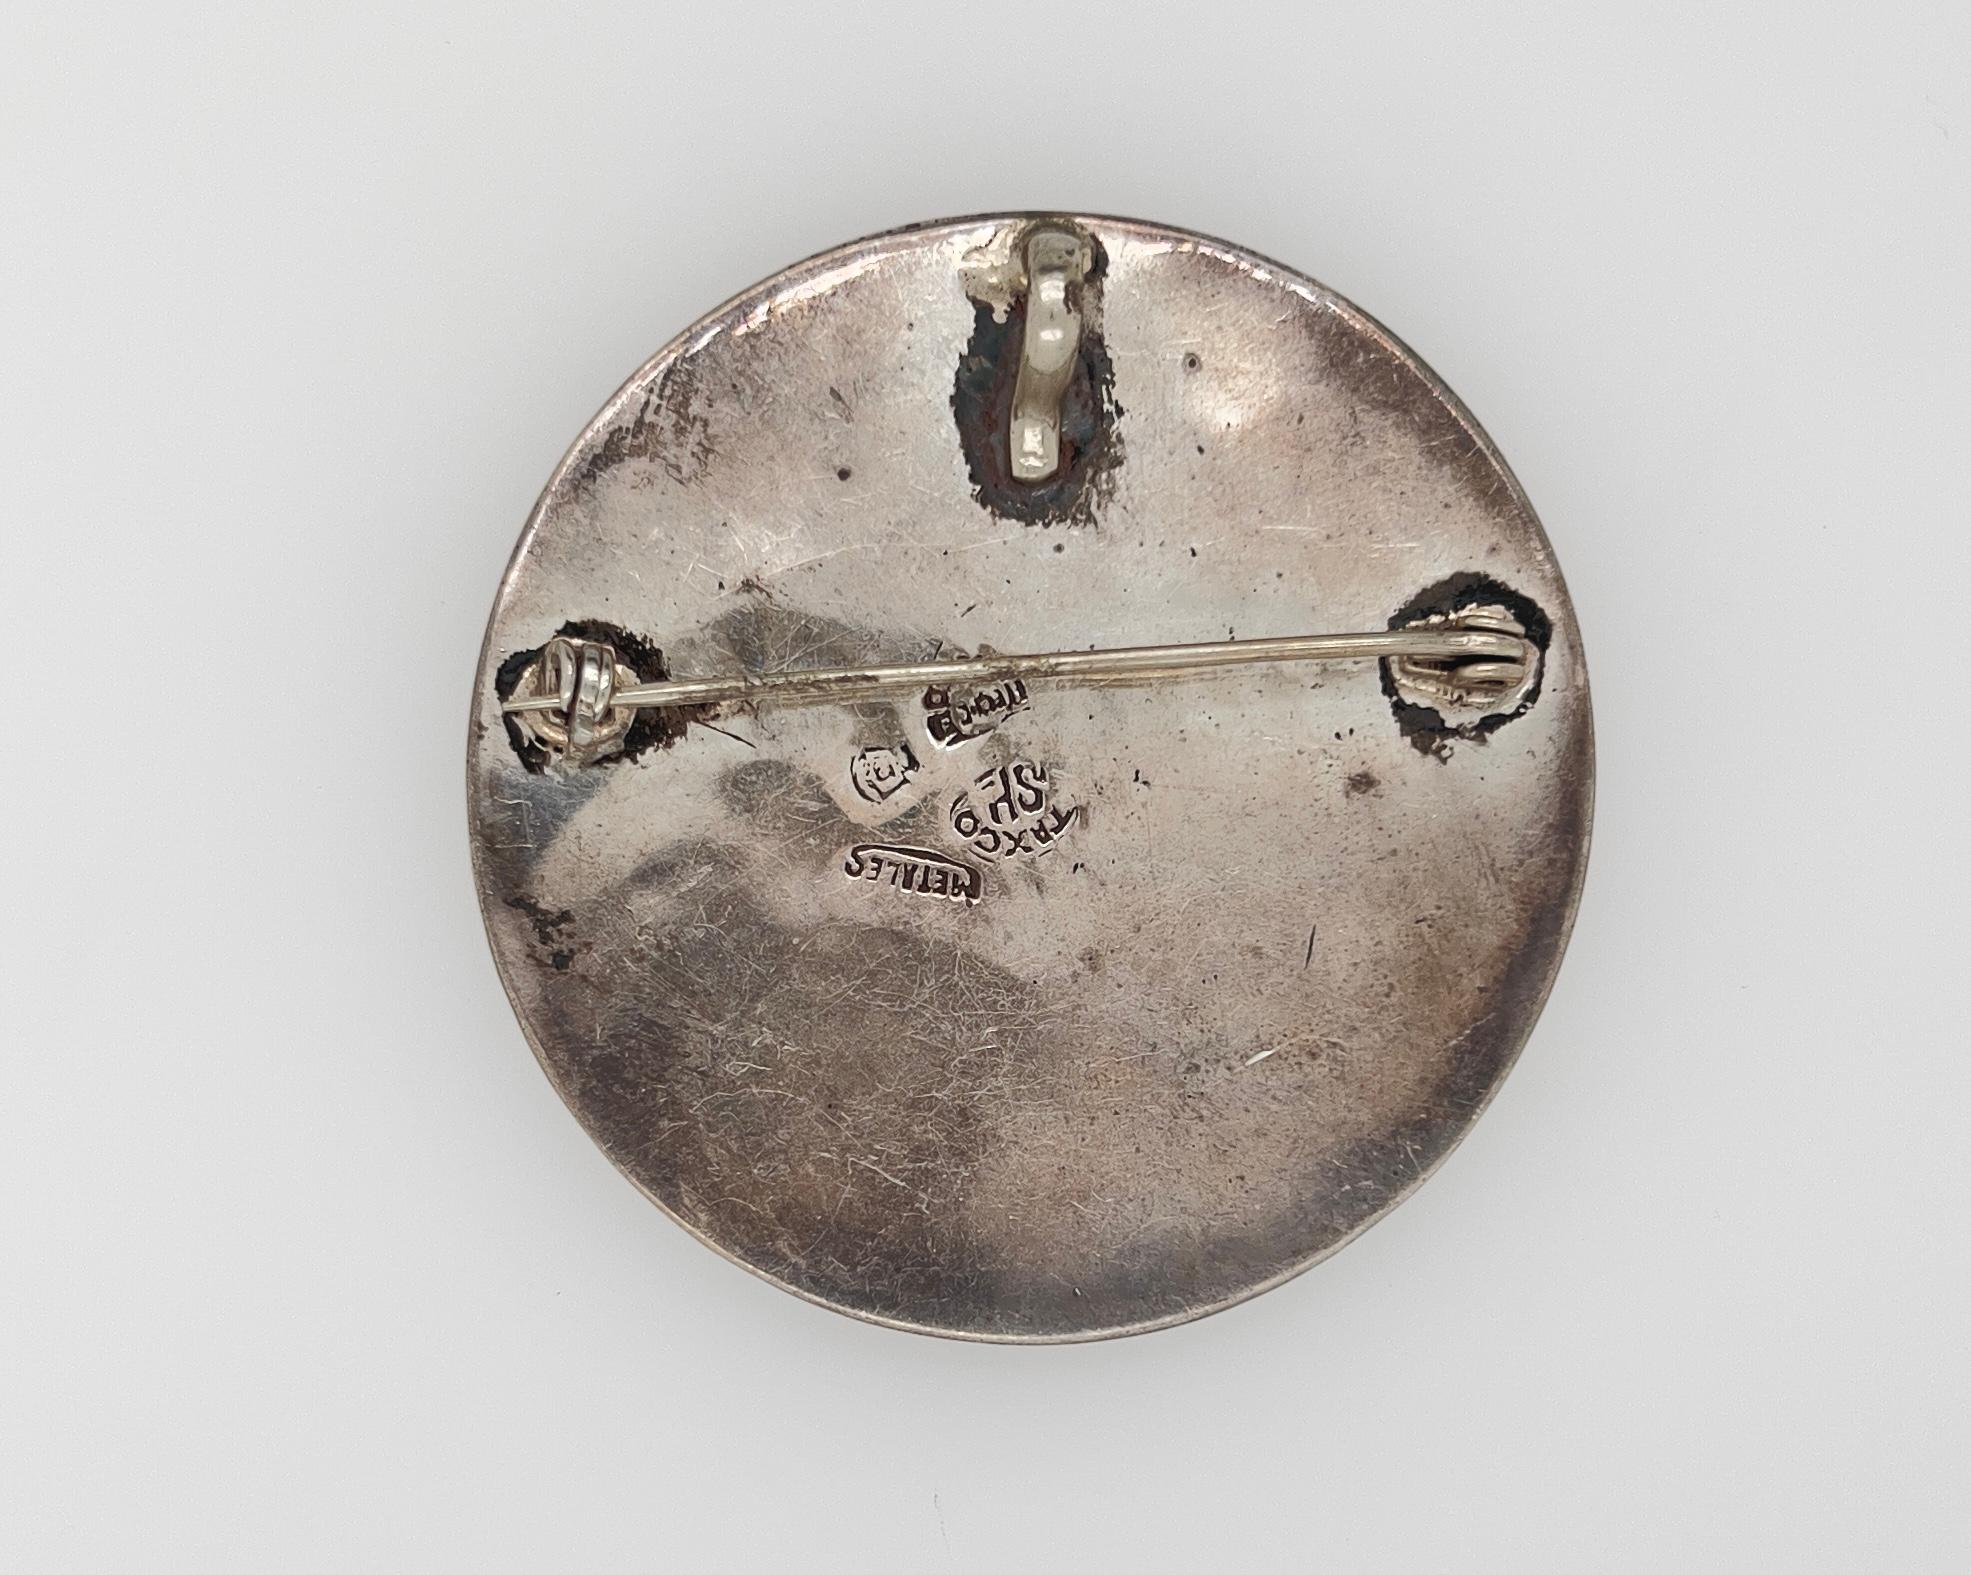 Metall: Silber
Natursteine
Antike
Durchmesser: 2 1/4 Zoll